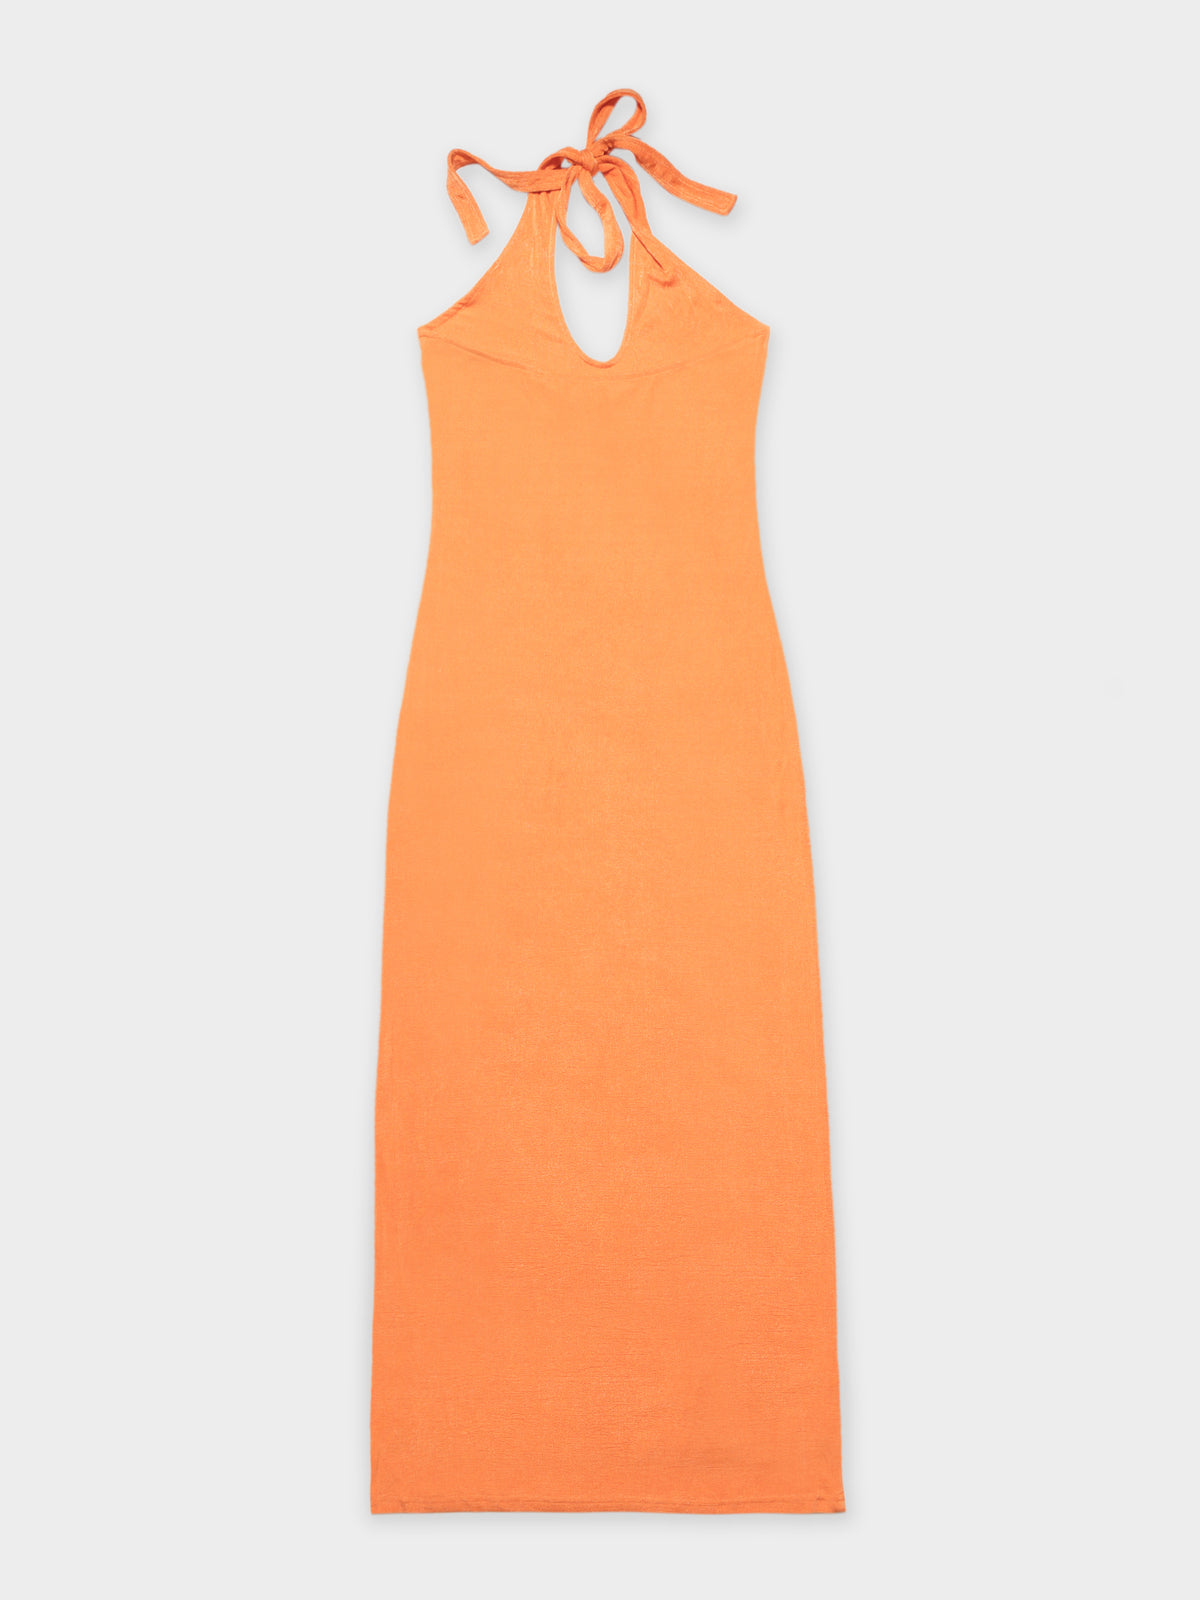 Celia Halter Dress in Tangerine Orange